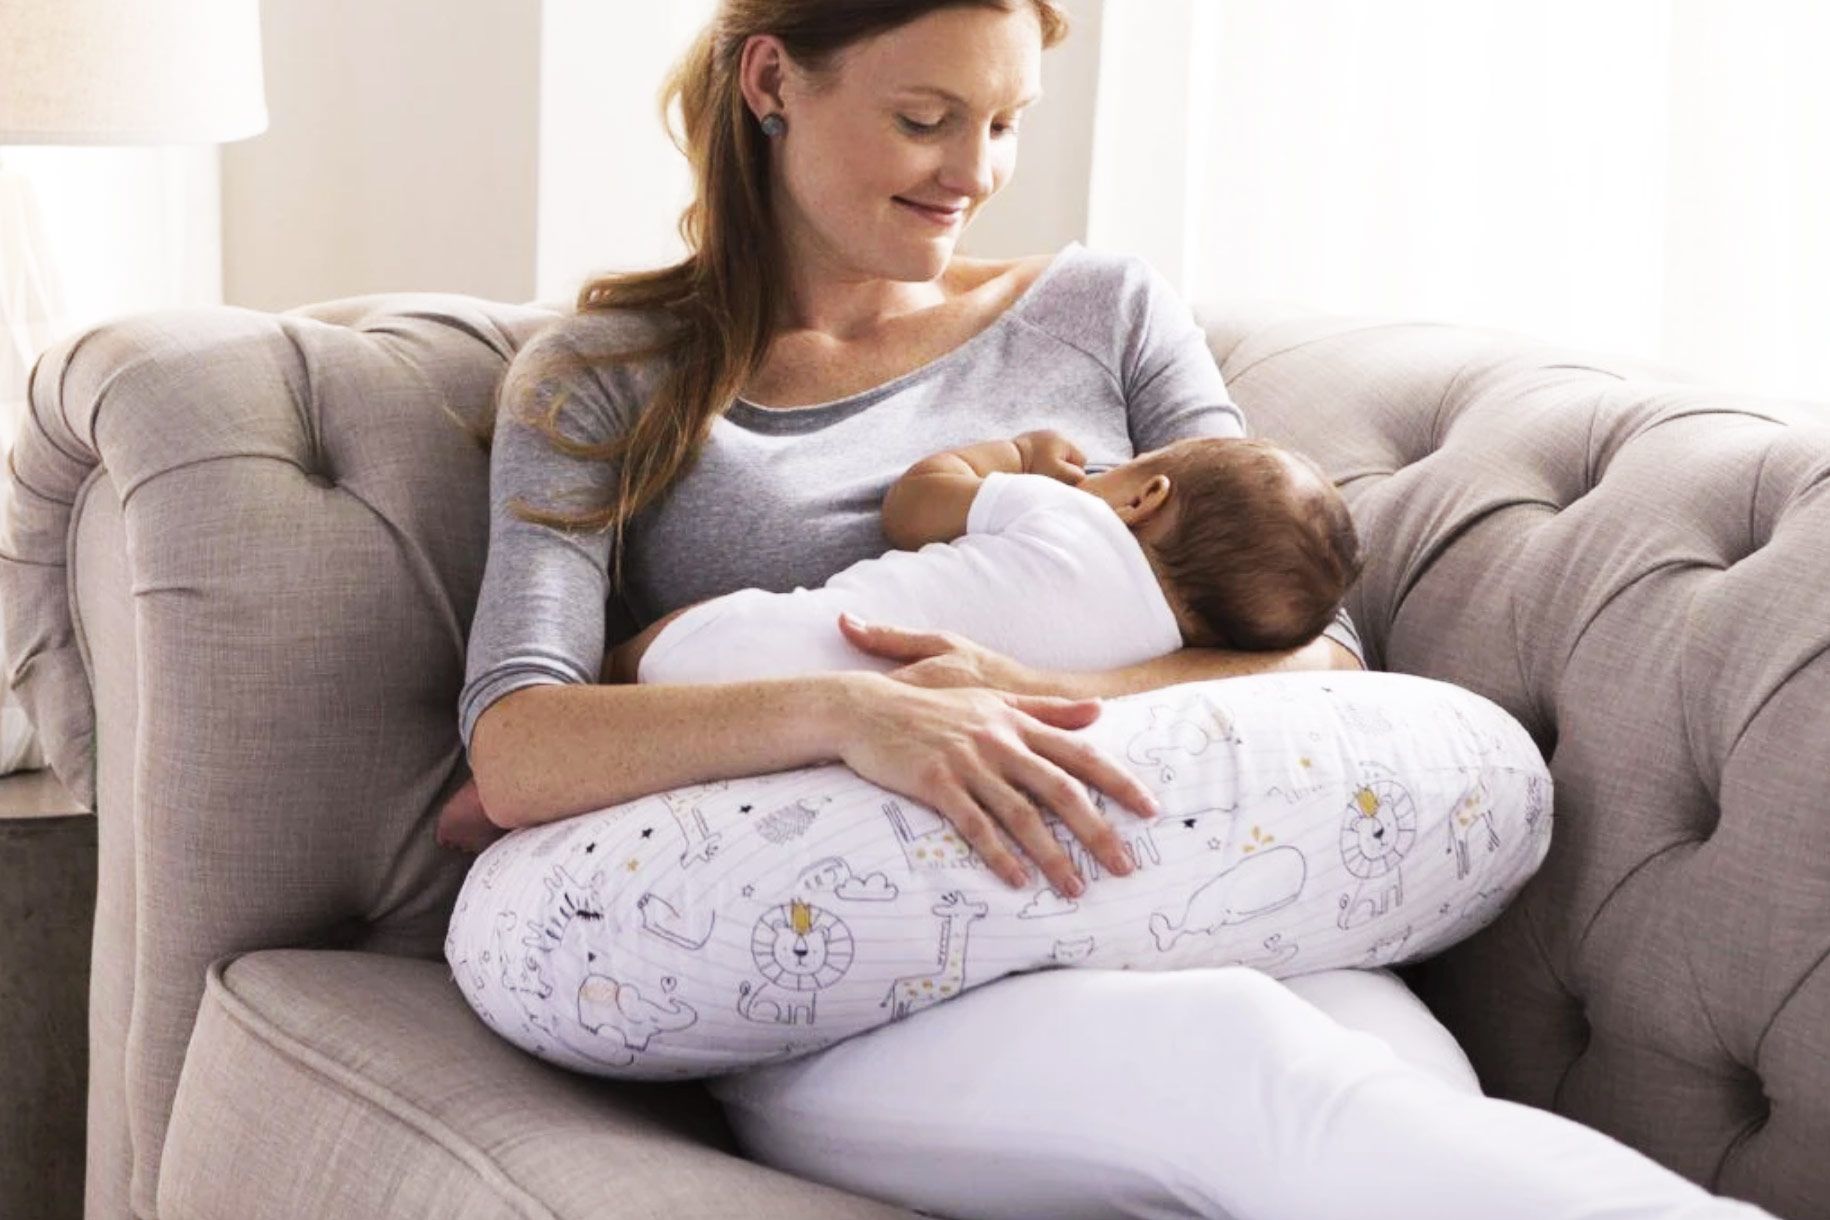  Momcozy Original Nursing Pillow For Breastfeeding, Plus Size  Breastfeeding Pillows For More Support